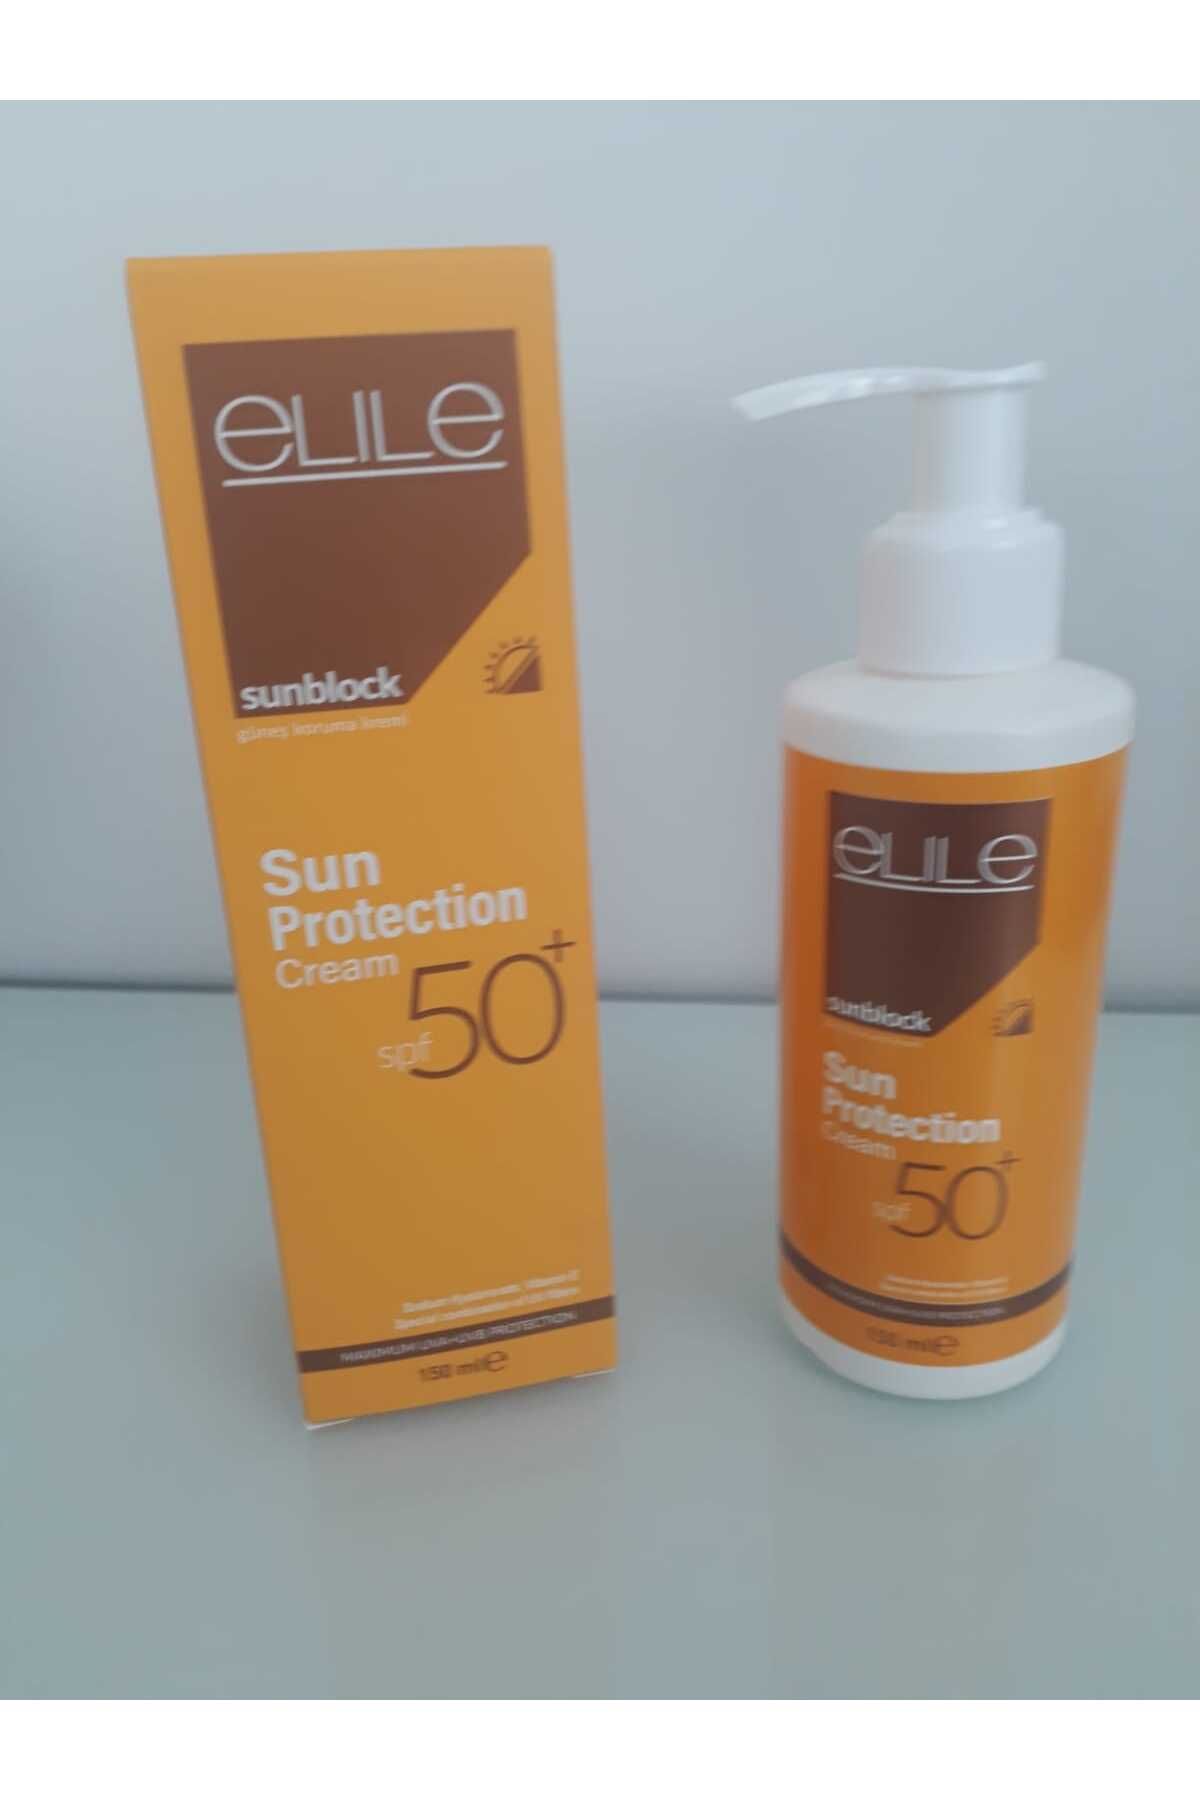 Elile Sunblock Sun Protection Cream- Shea Butter Ve Hyaluronic Acid Içeren Güneş Koruma Kremi 150 Ml